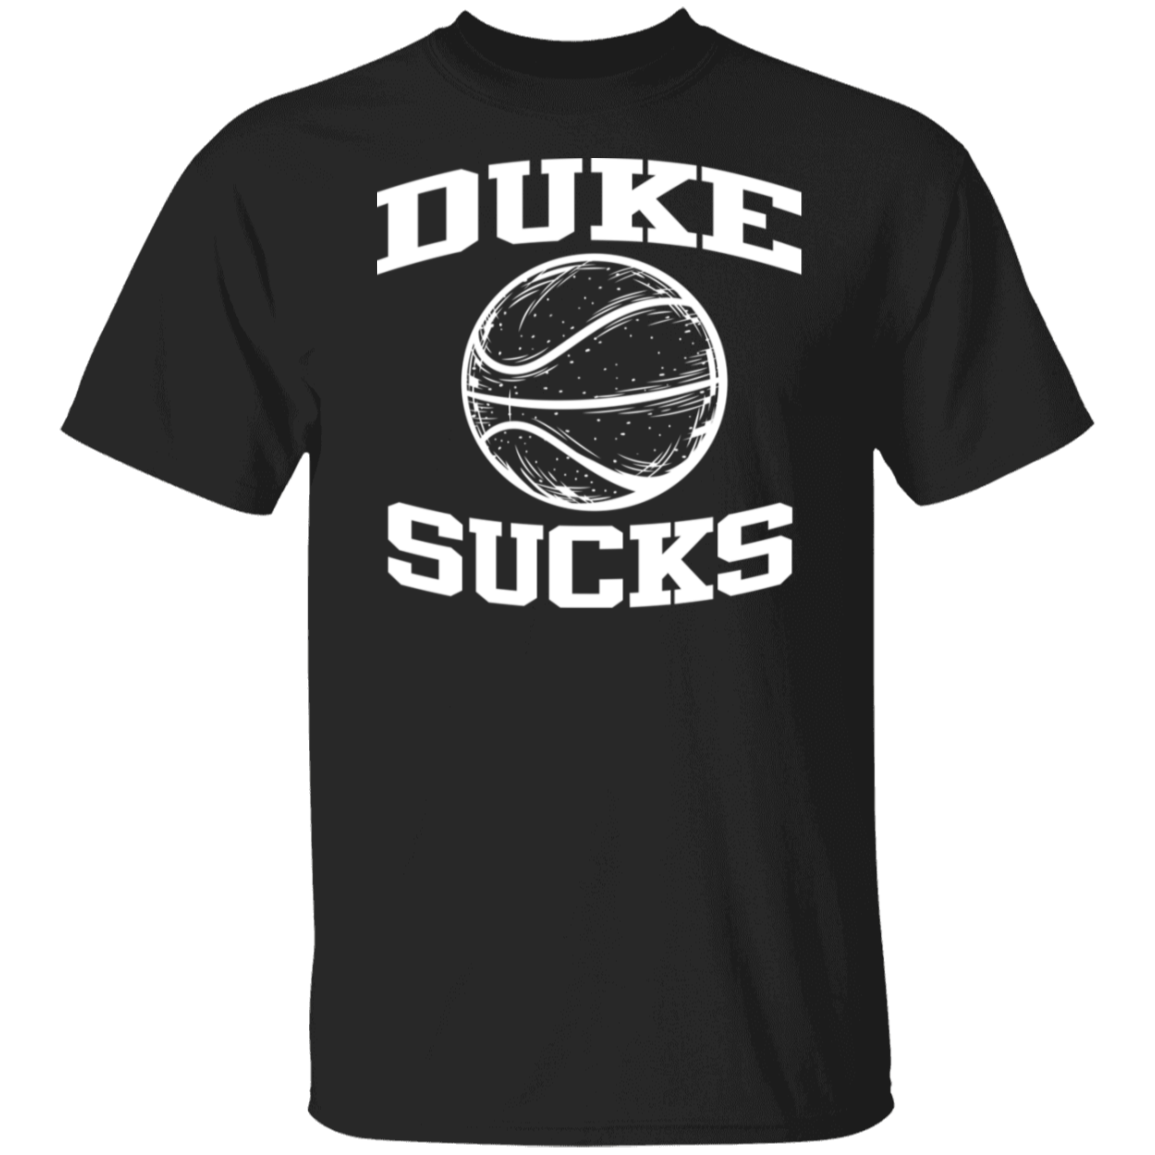 Duke Sucks White Print T-Shirt